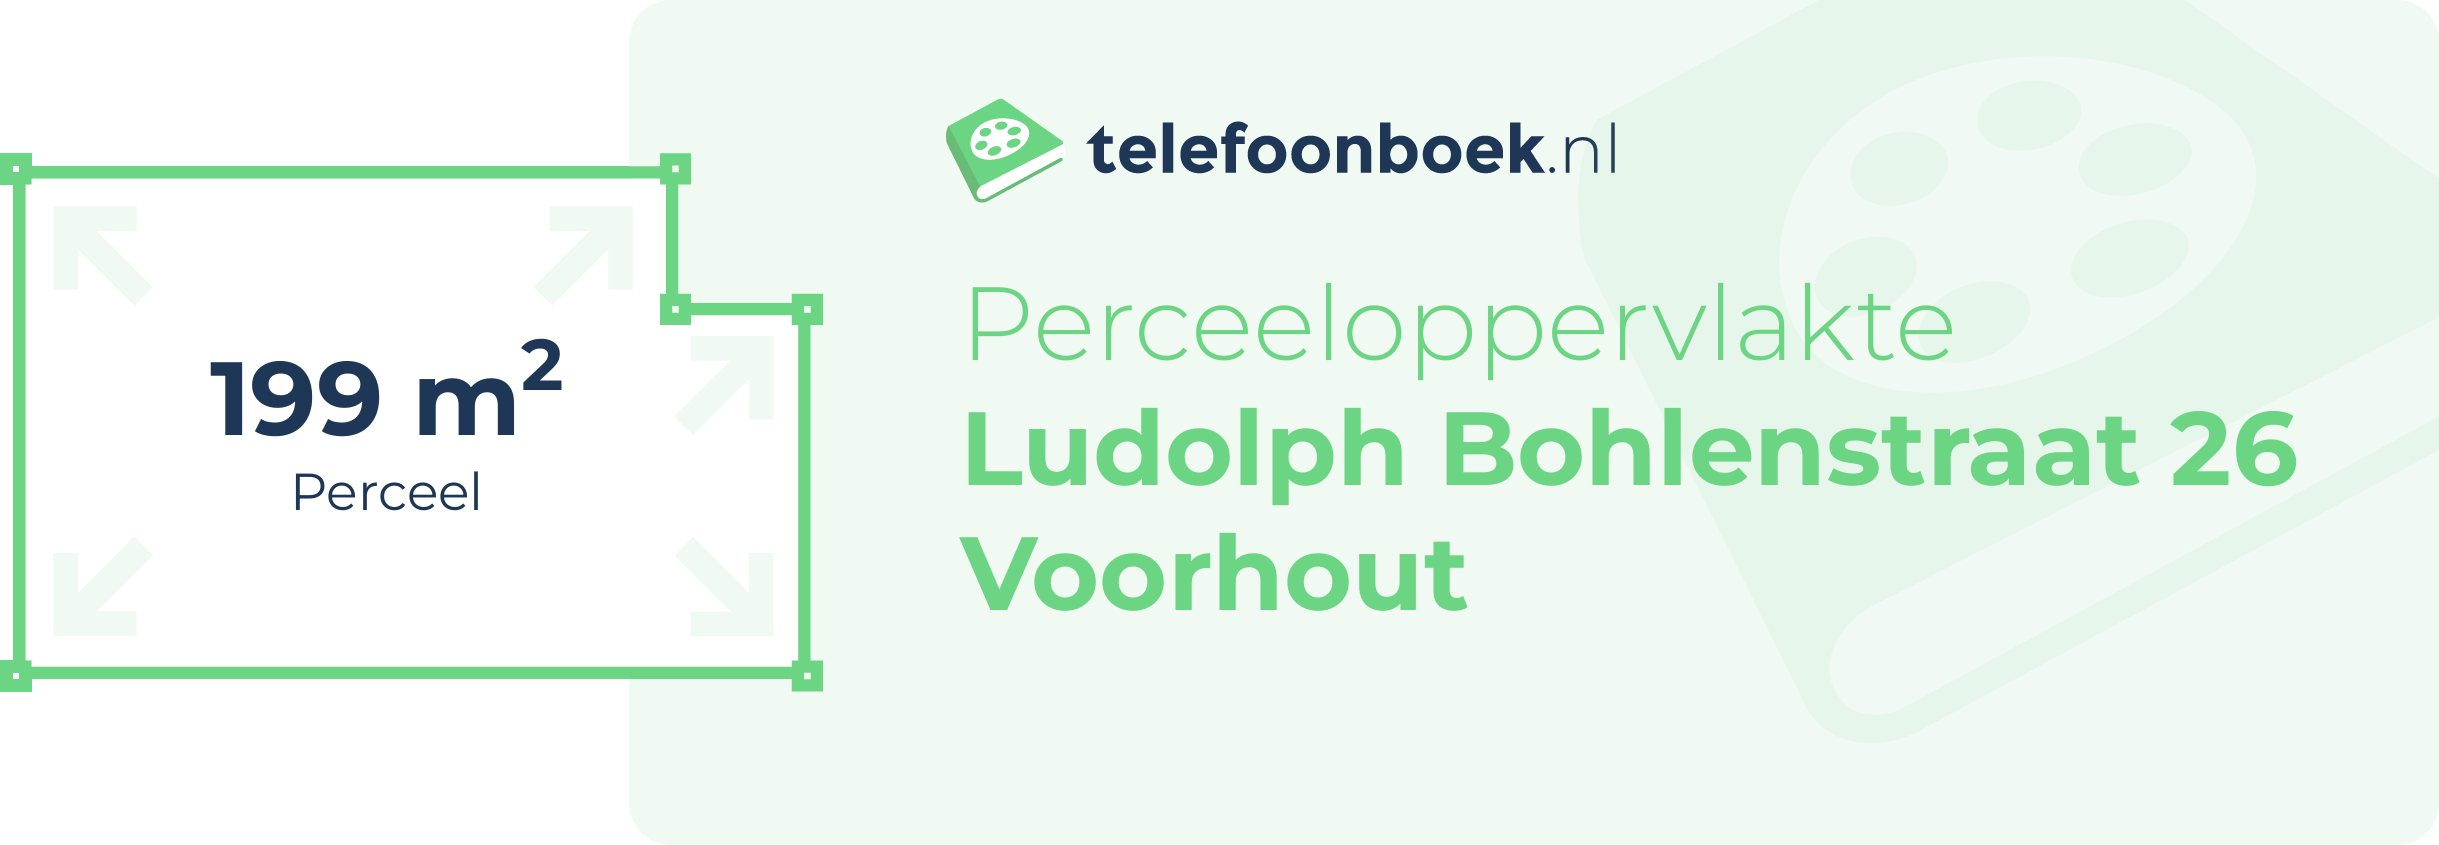 Perceeloppervlakte Ludolph Bohlenstraat 26 Voorhout